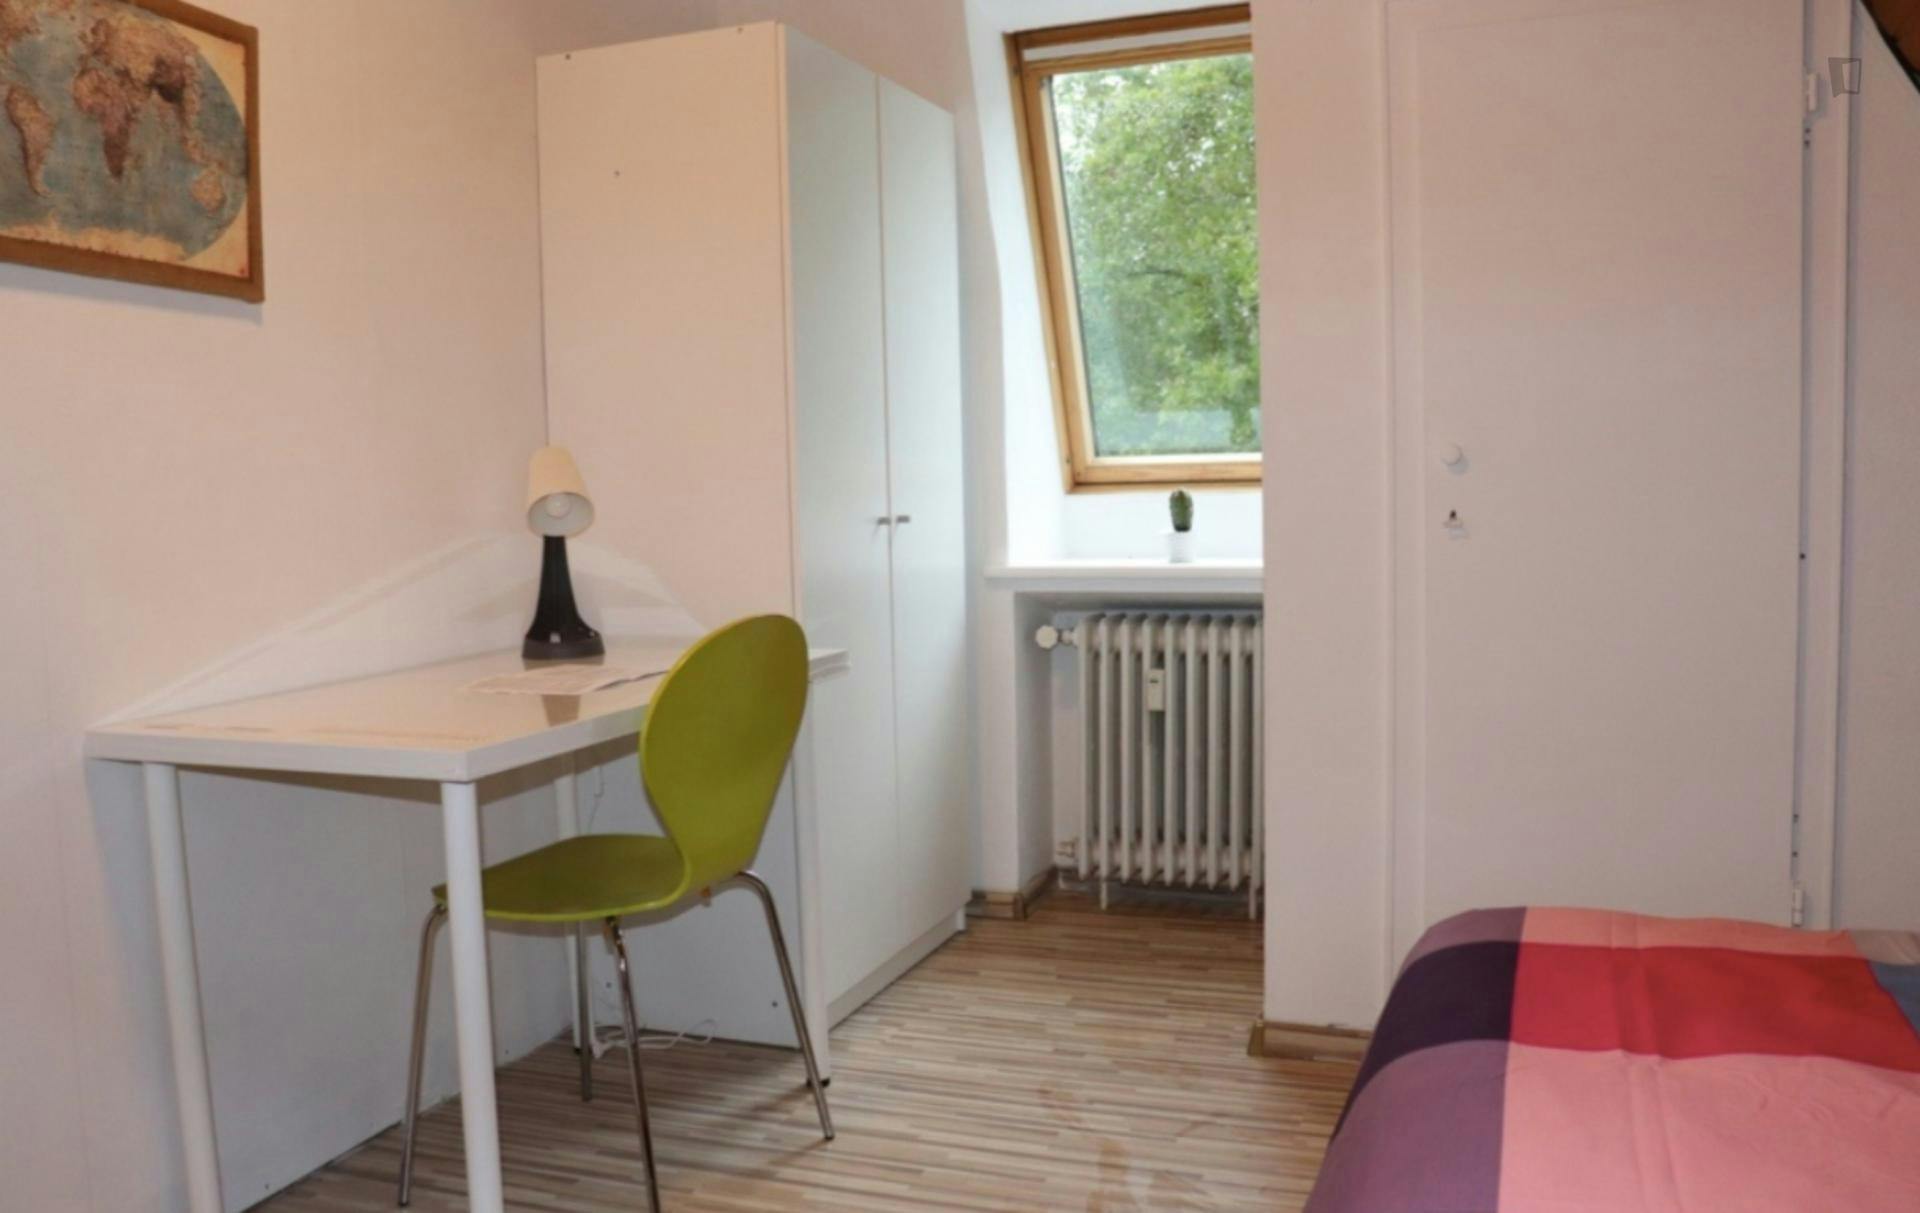 Comfortable single-bedroom in a 6-bedroom apartment in Bremen Altstadt right next to Wallanlagen Park